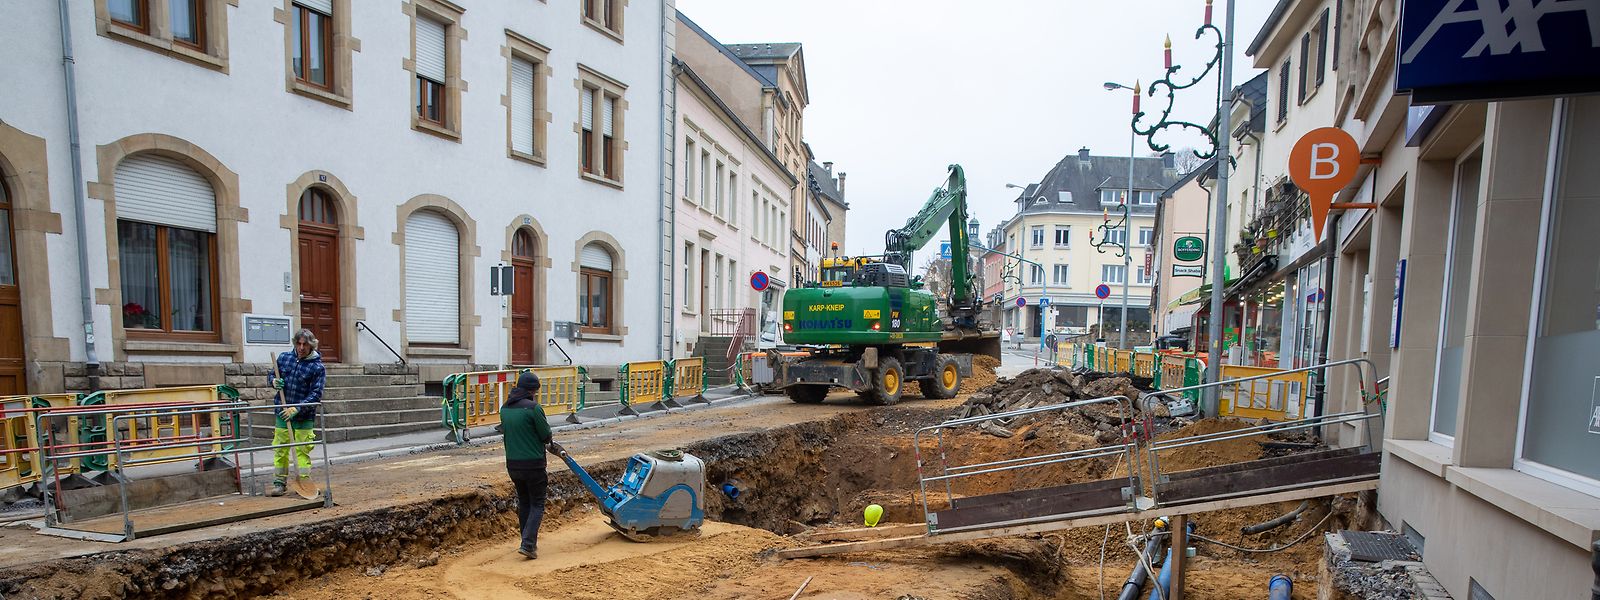 Die Neugestaltung der Rue Grande-Duchesse Charlotte wird noch etwa zwei Jahre in Anspruch nehmen.